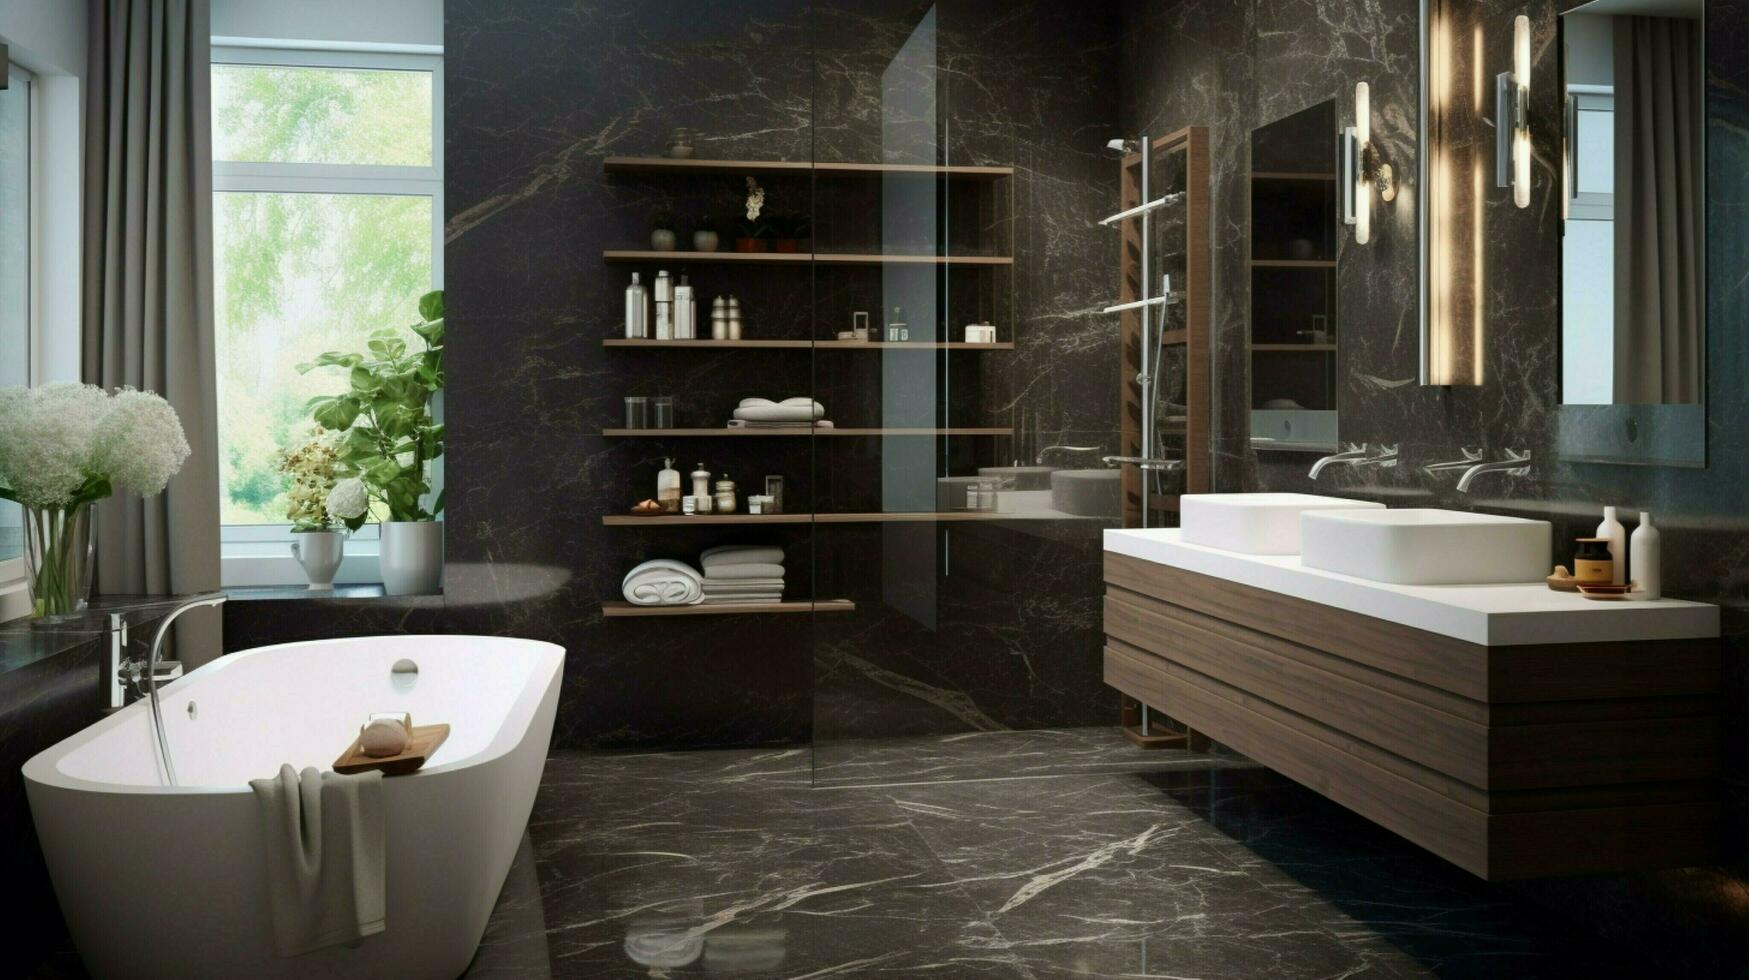 modern inländisch Badezimmer mit elegant Stil foto